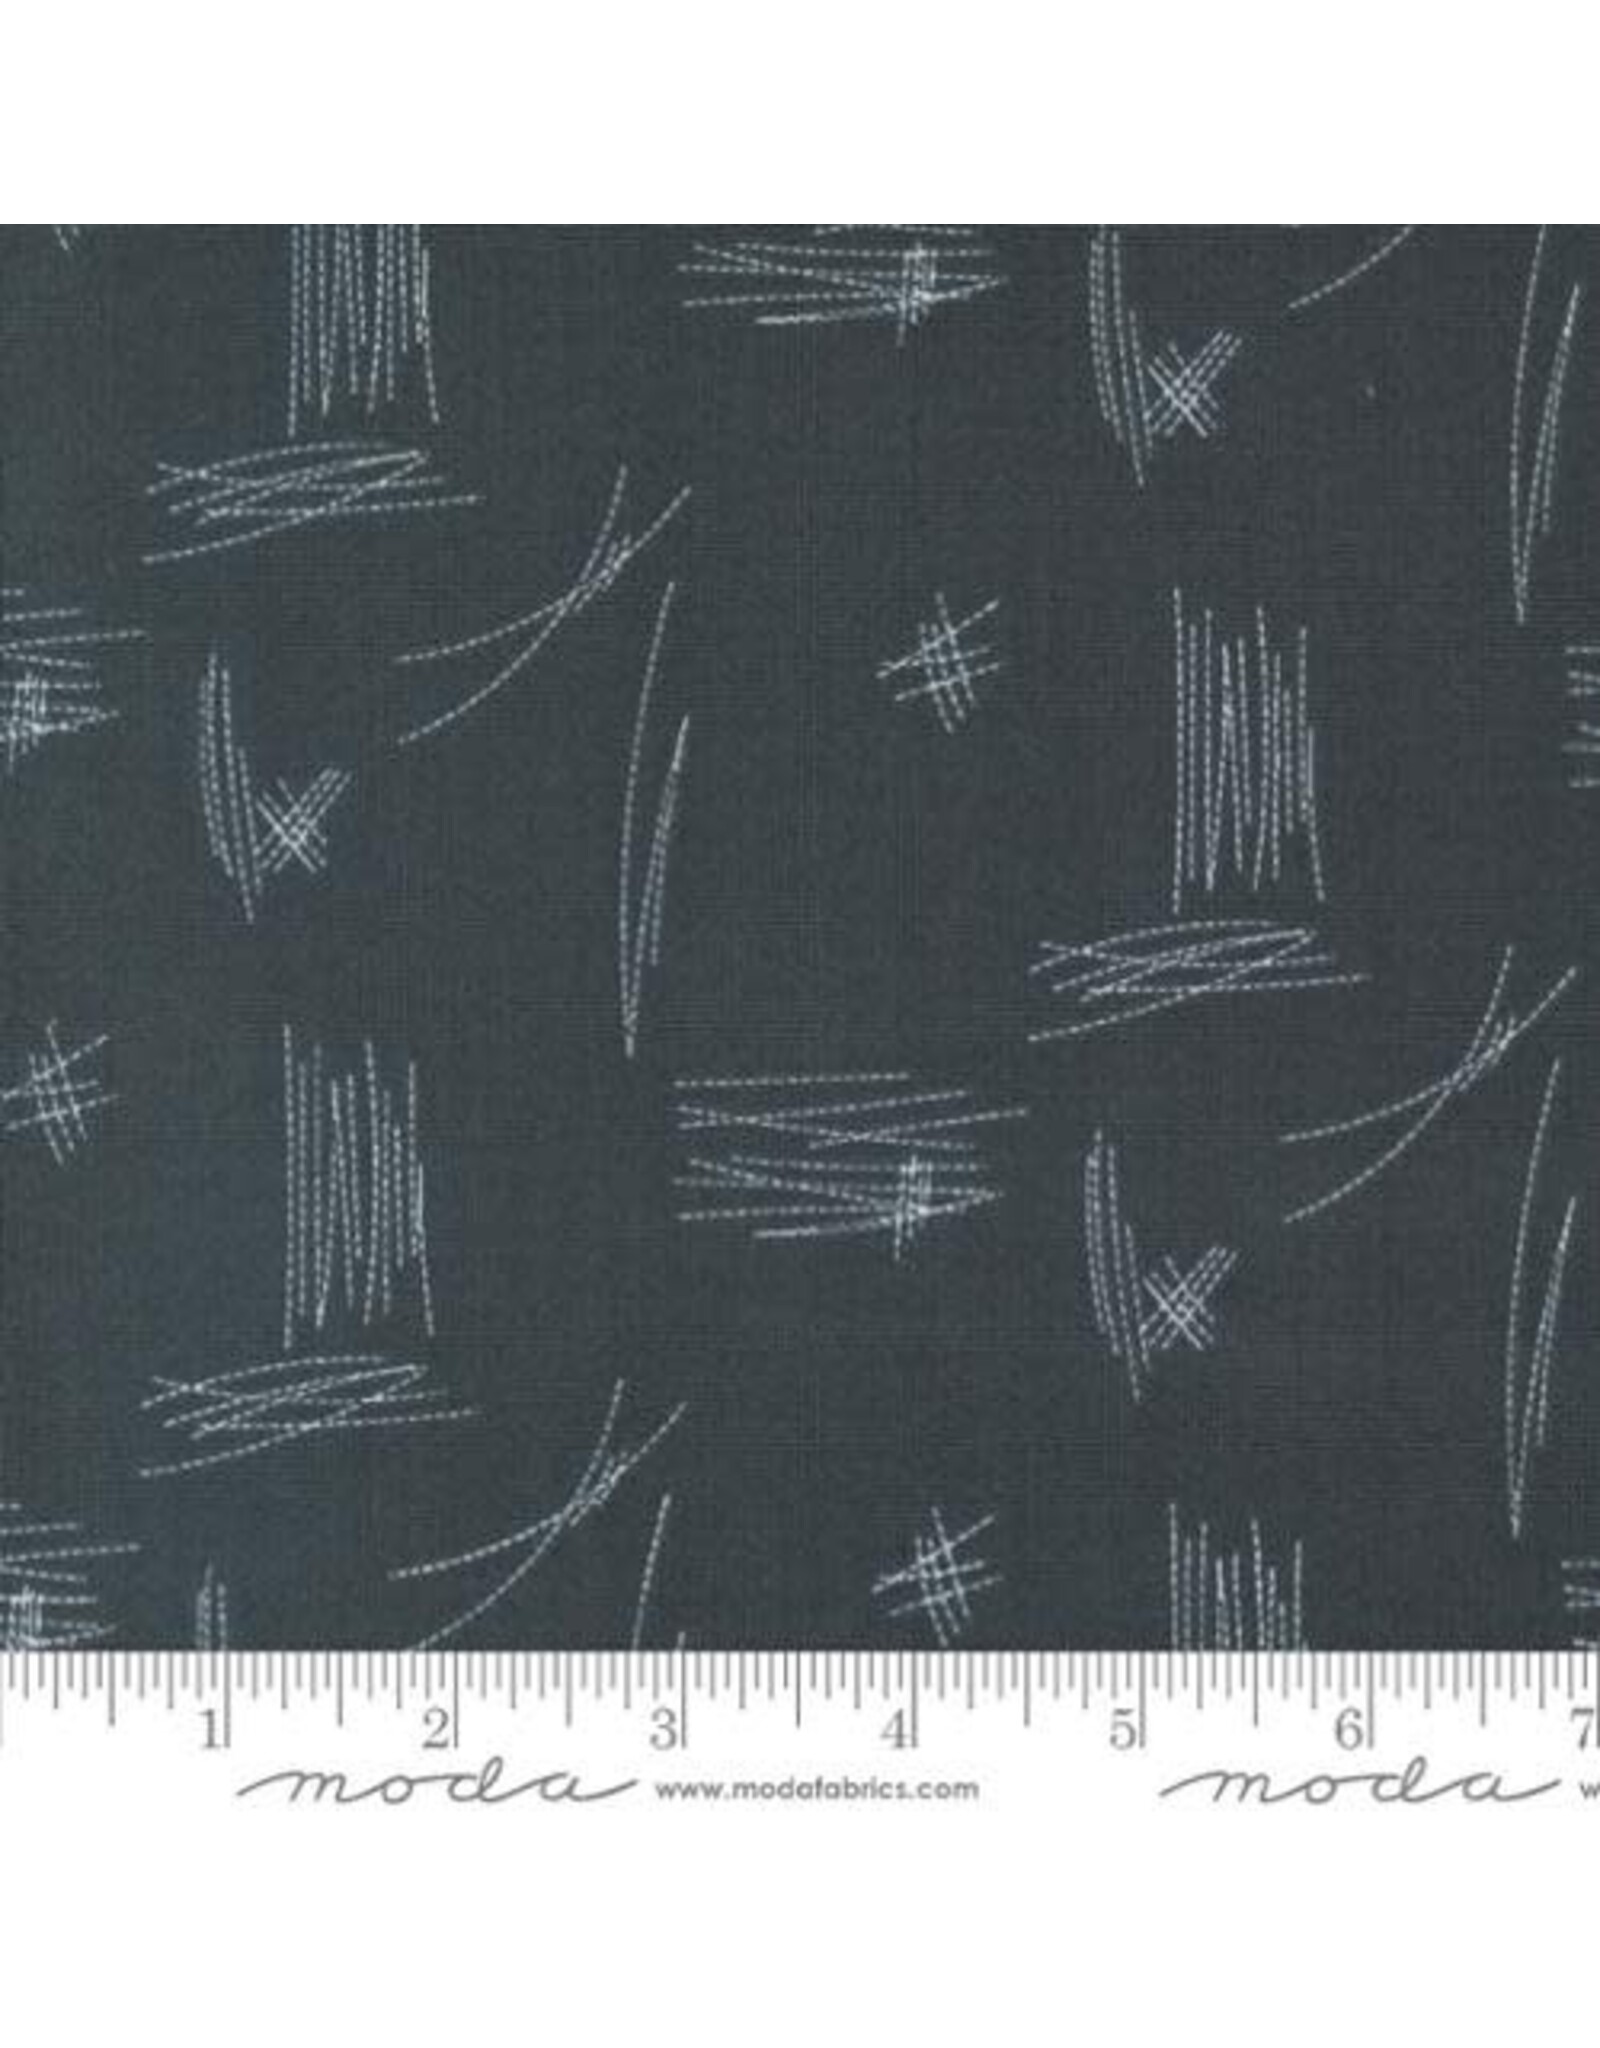 Moda Zen Chic - Bluish - Stitches Charcoal - 1822 18